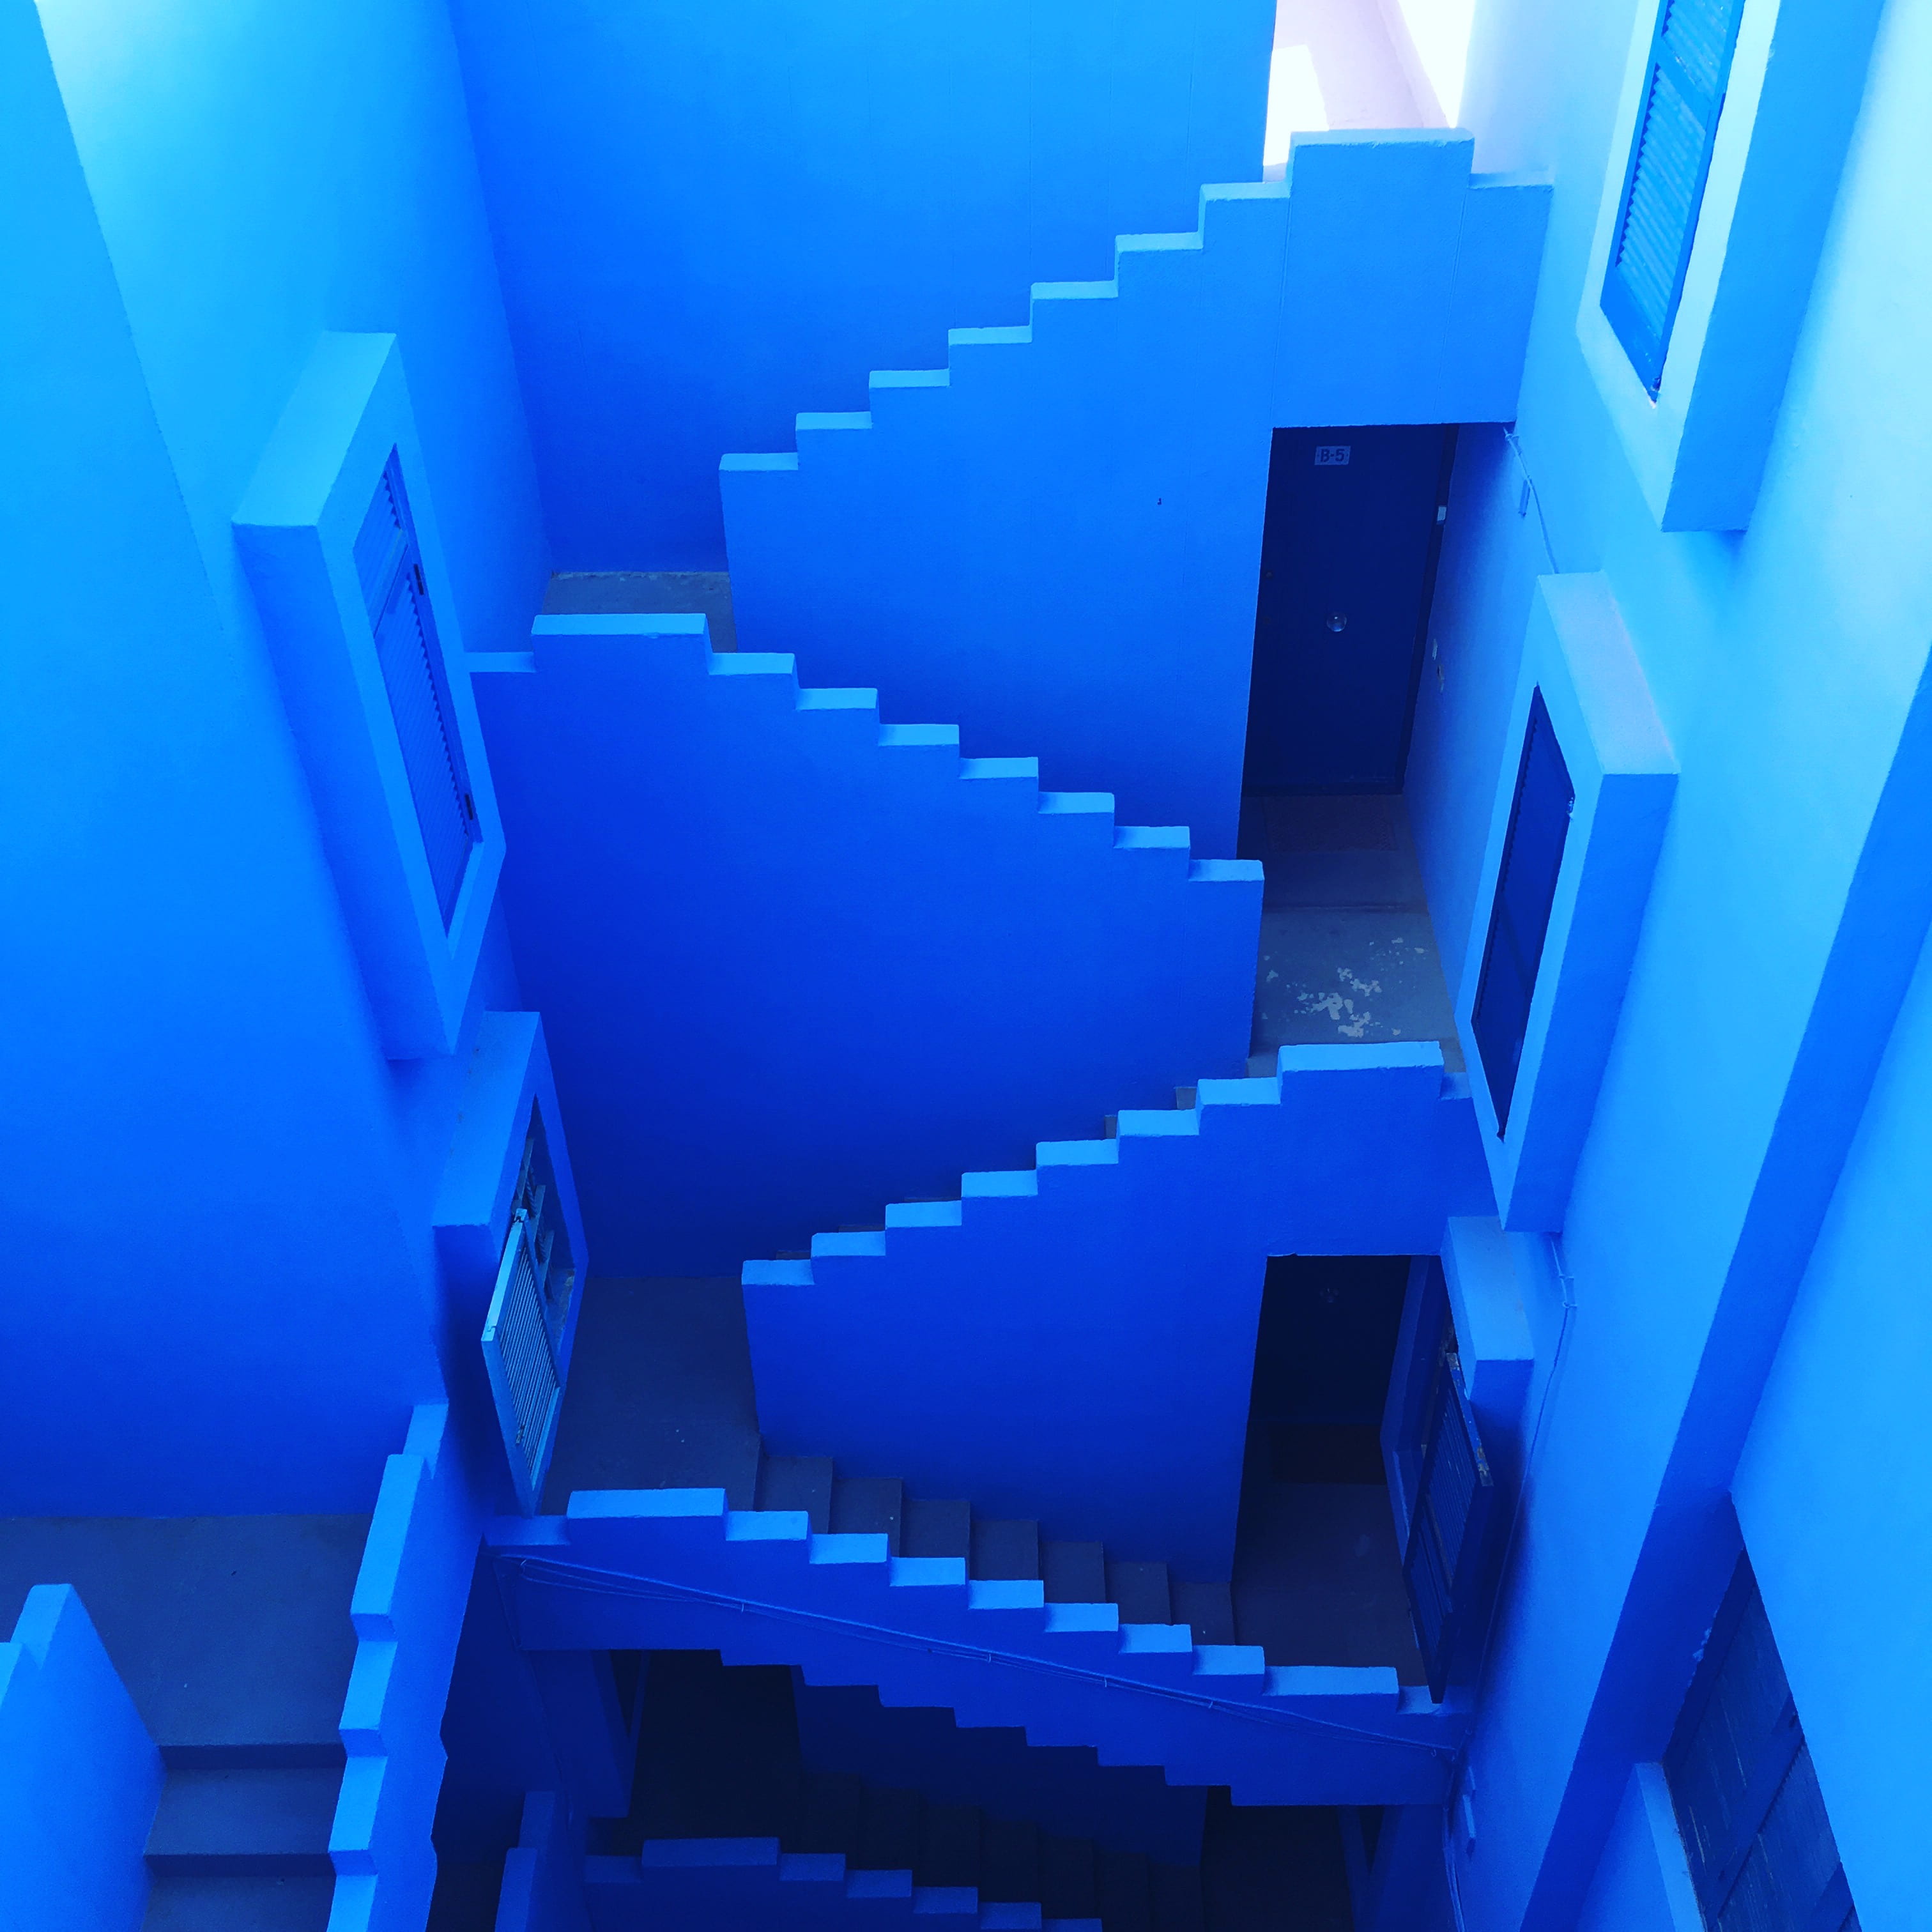 blue maze room interior, blue concrete building interior, stair